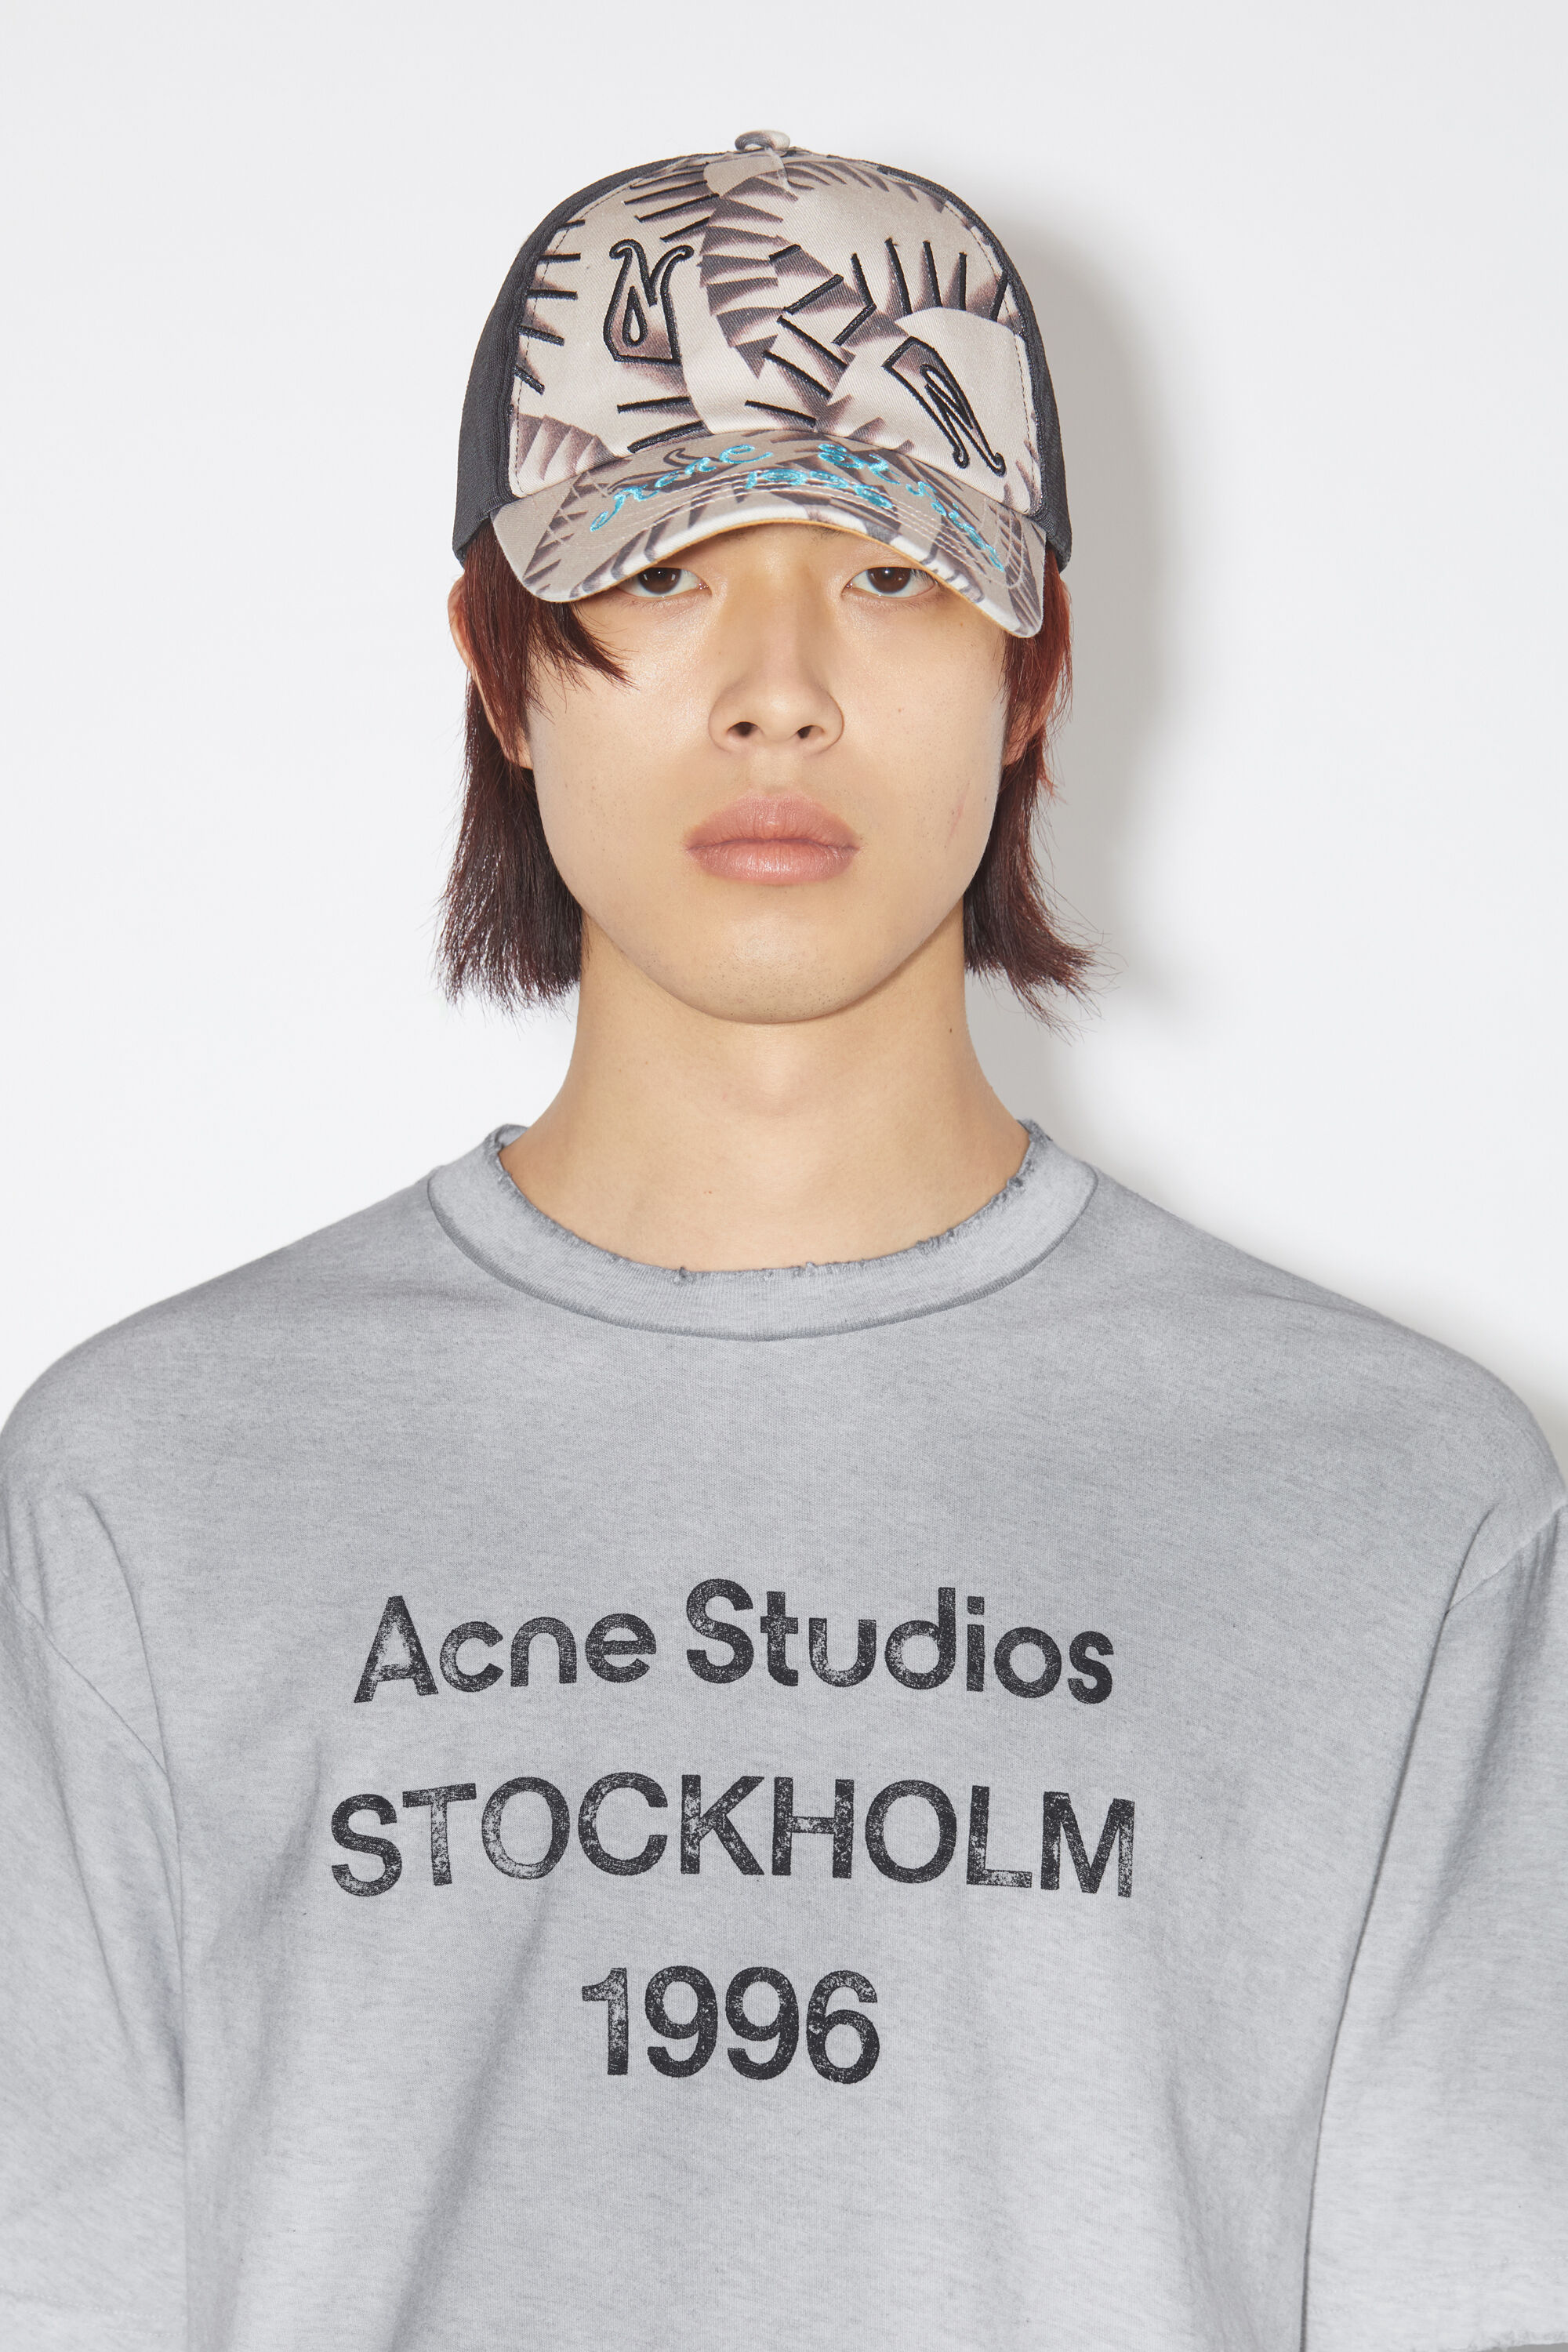 アクネスタジオ/Acne StudiosホワイトプリントTシャツX Sサイズ